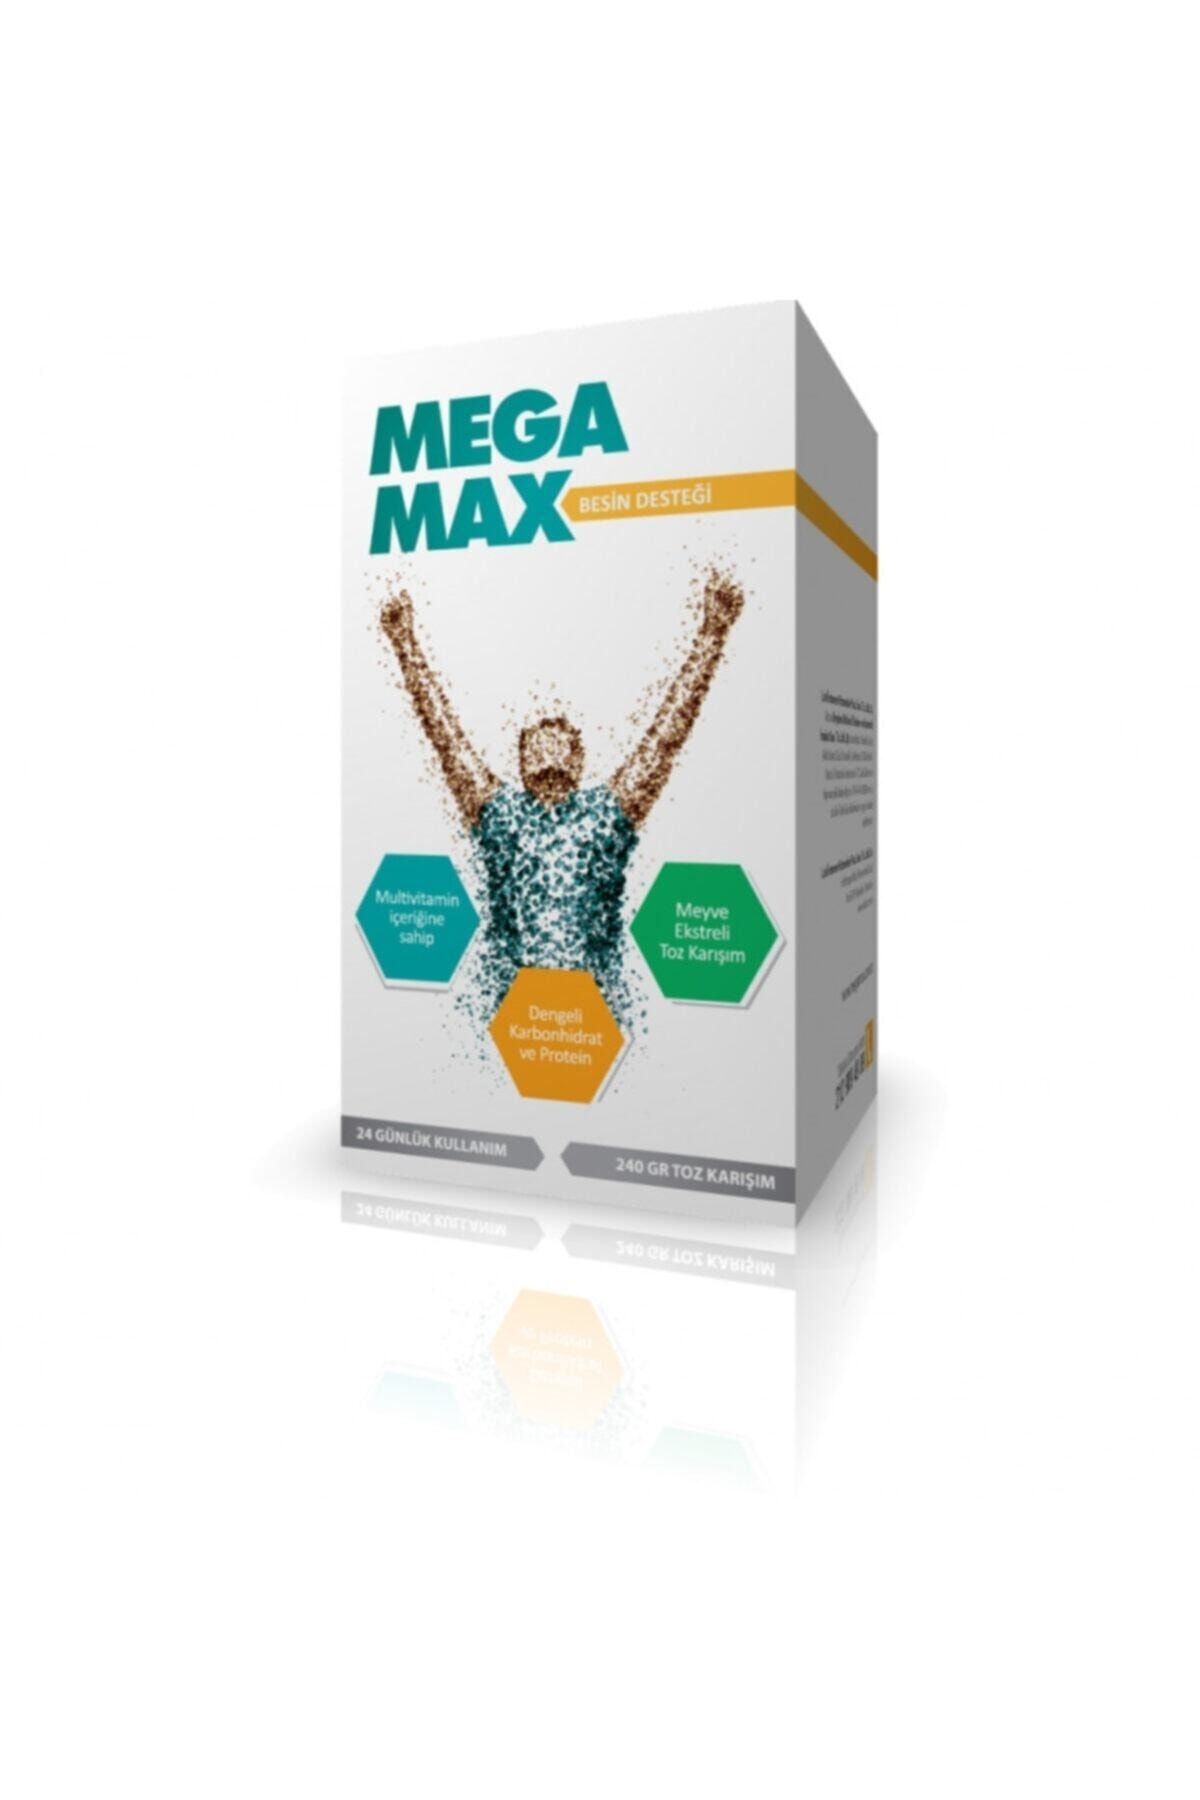 Mega Max 24 Günlük Kullanım Hologram Sorgulamalı.